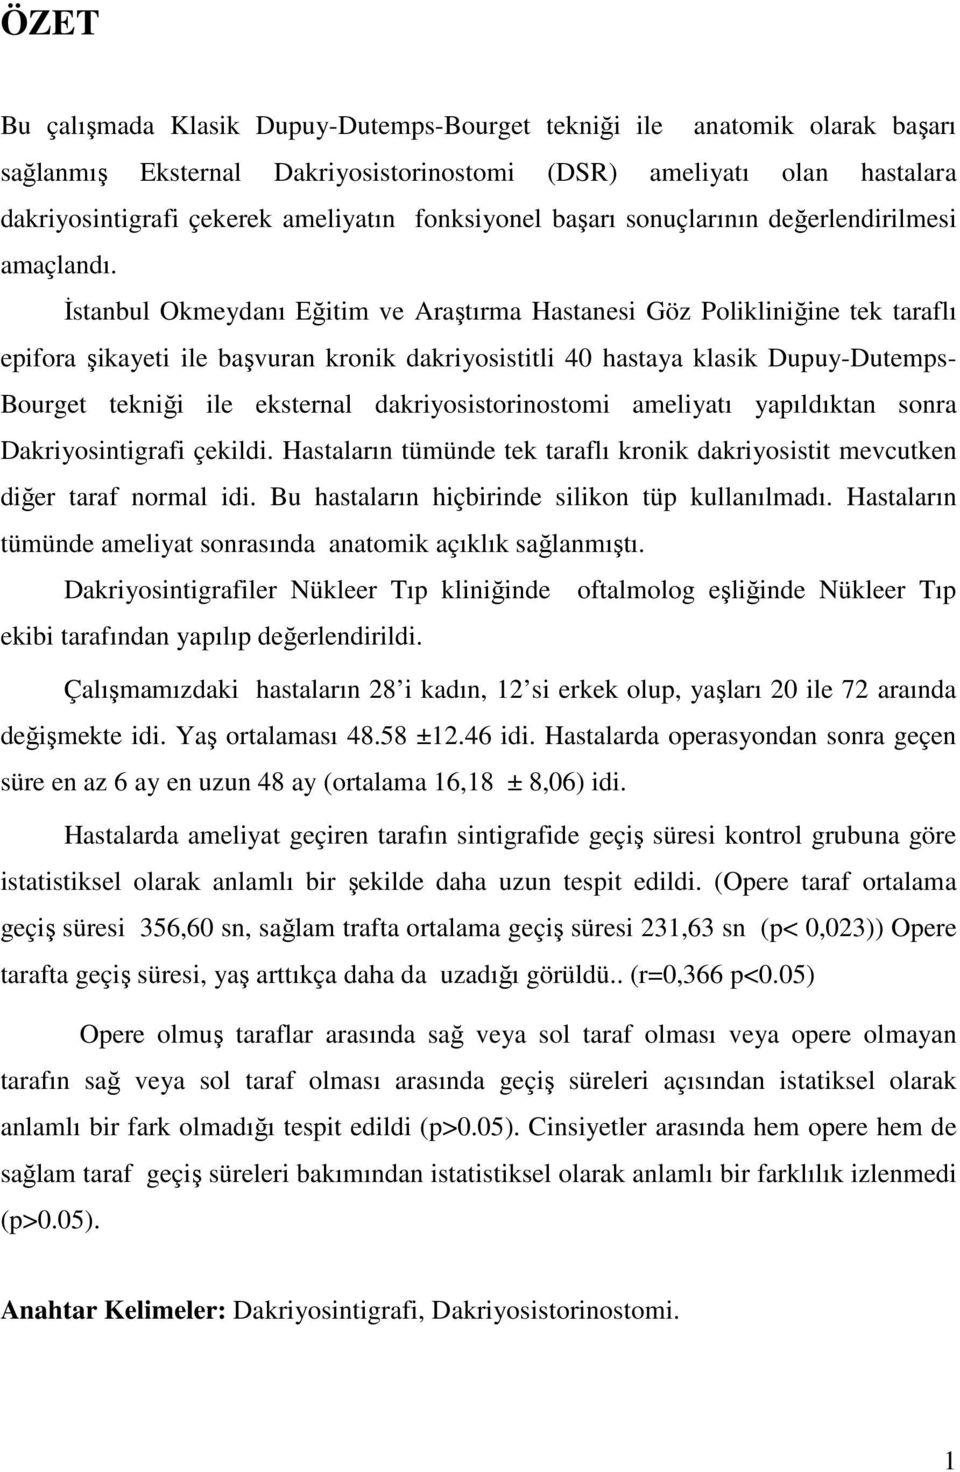 İstanbul Okmeydanı Eğitim ve Araştırma Hastanesi Göz Polikliniğine tek taraflı epifora şikayeti ile başvuran kronik dakriyosistitli 40 hastaya klasik Dupuy-Dutemps- Bourget tekniği ile eksternal